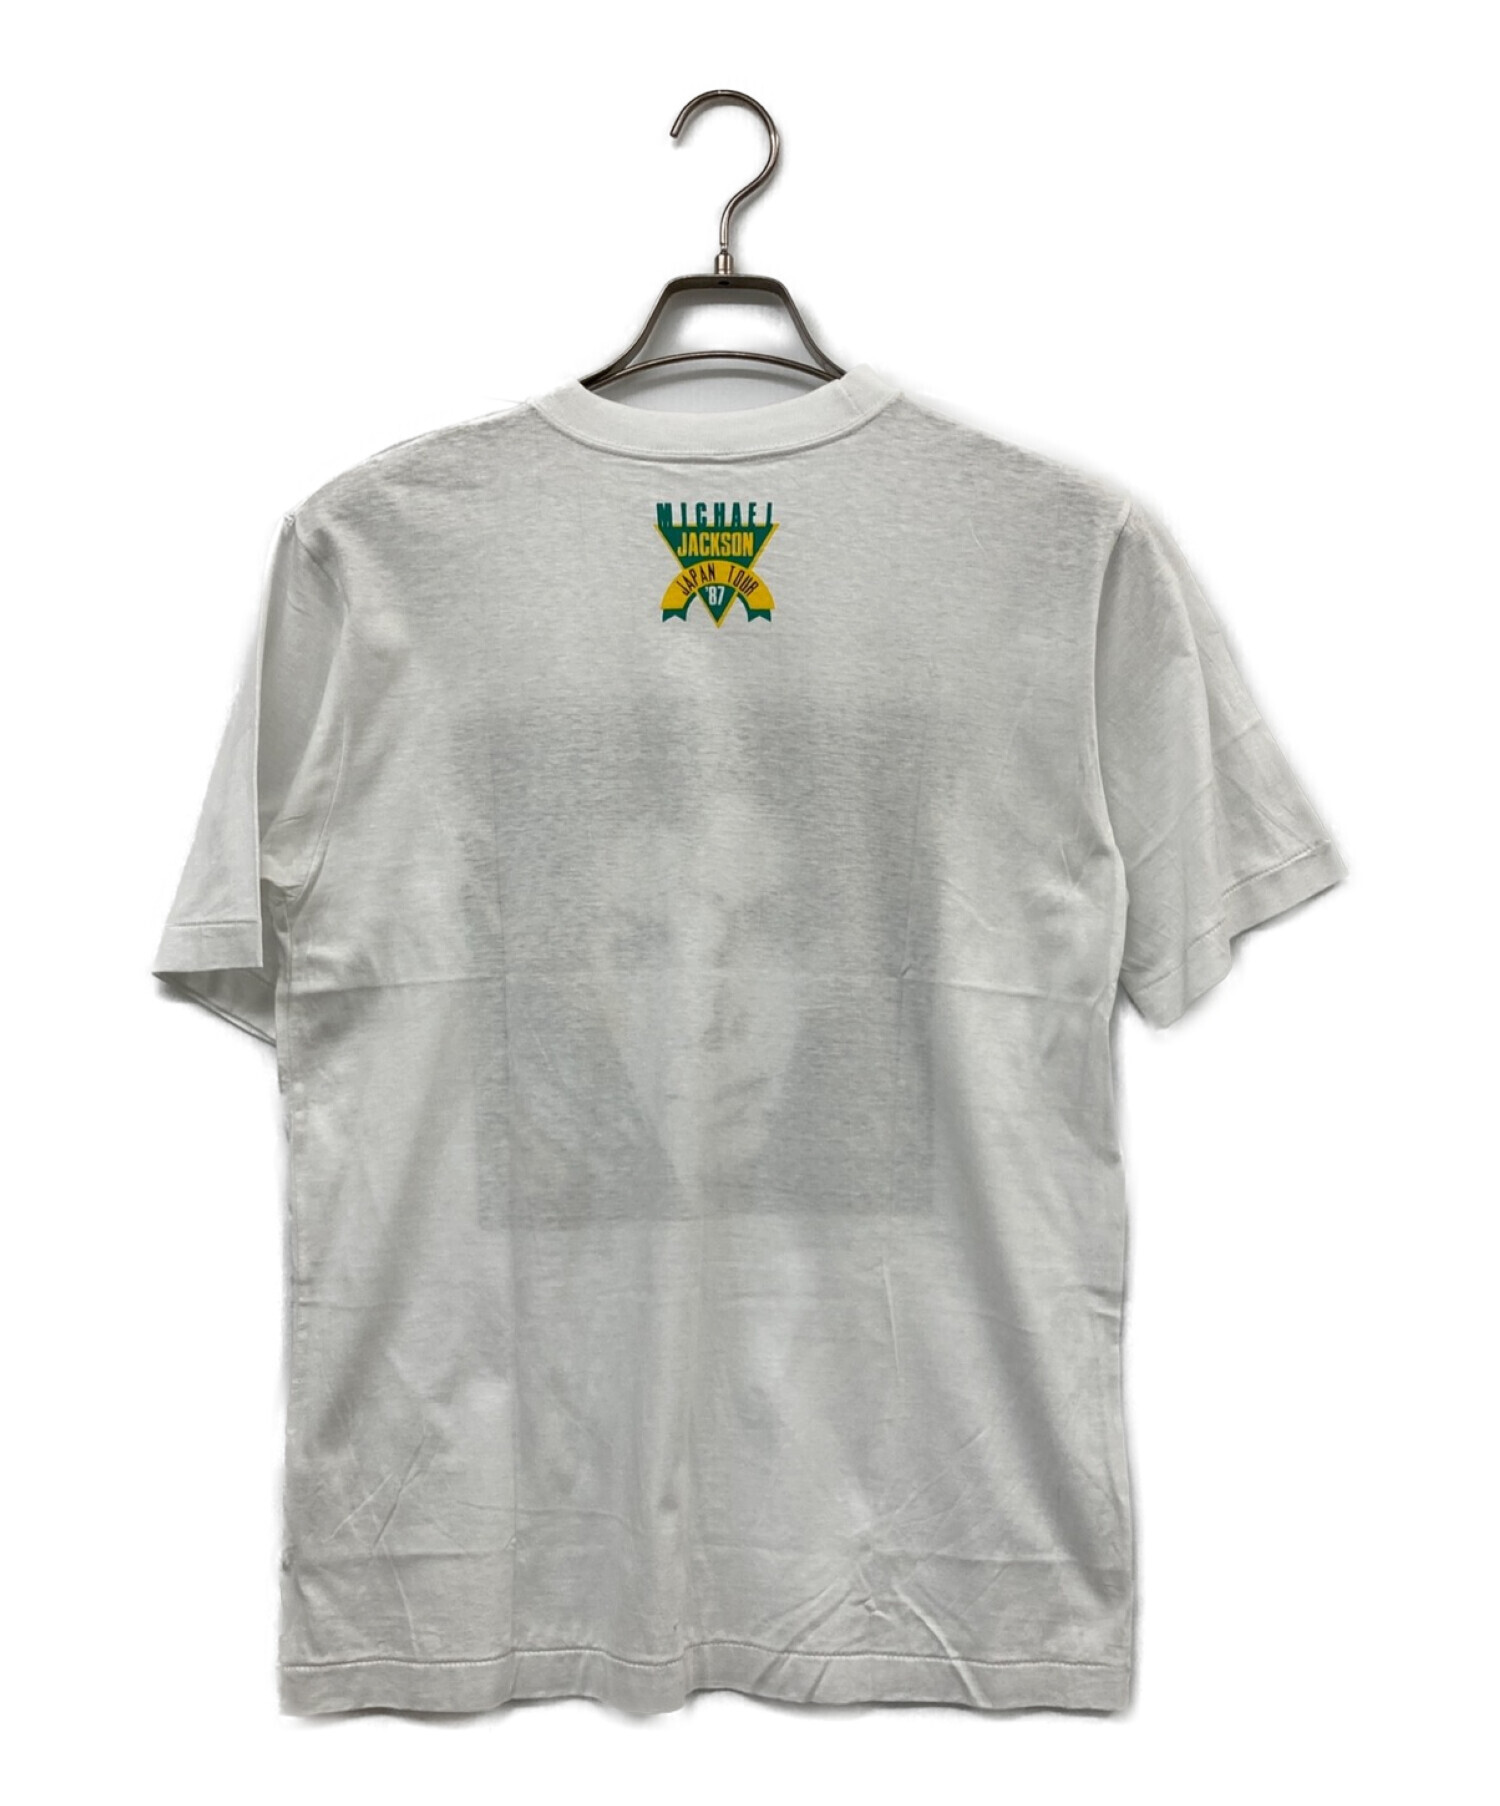 USED (ユーズド) MICHAEL JACKSON 87年ツアー ヴィンテージTシャツ ホワイト サイズ:表記無し